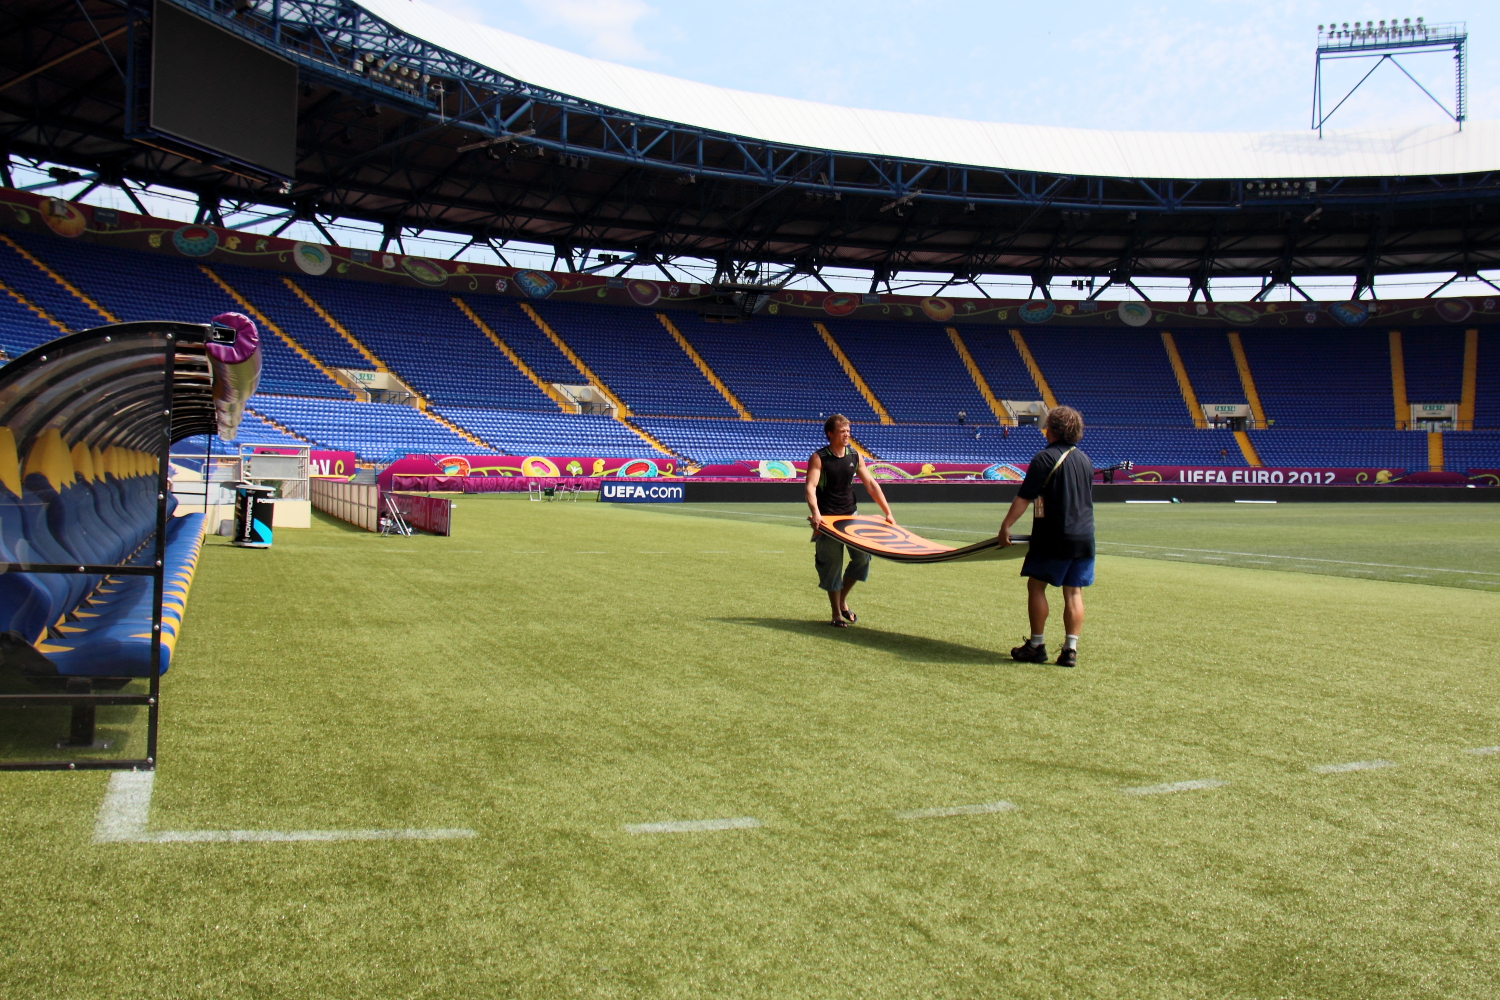 «Металлист» стадиону Евро-2012ге даярданып жатат. Анда мага бул сүрөттү жайгаштырууга тыюу салышкан.